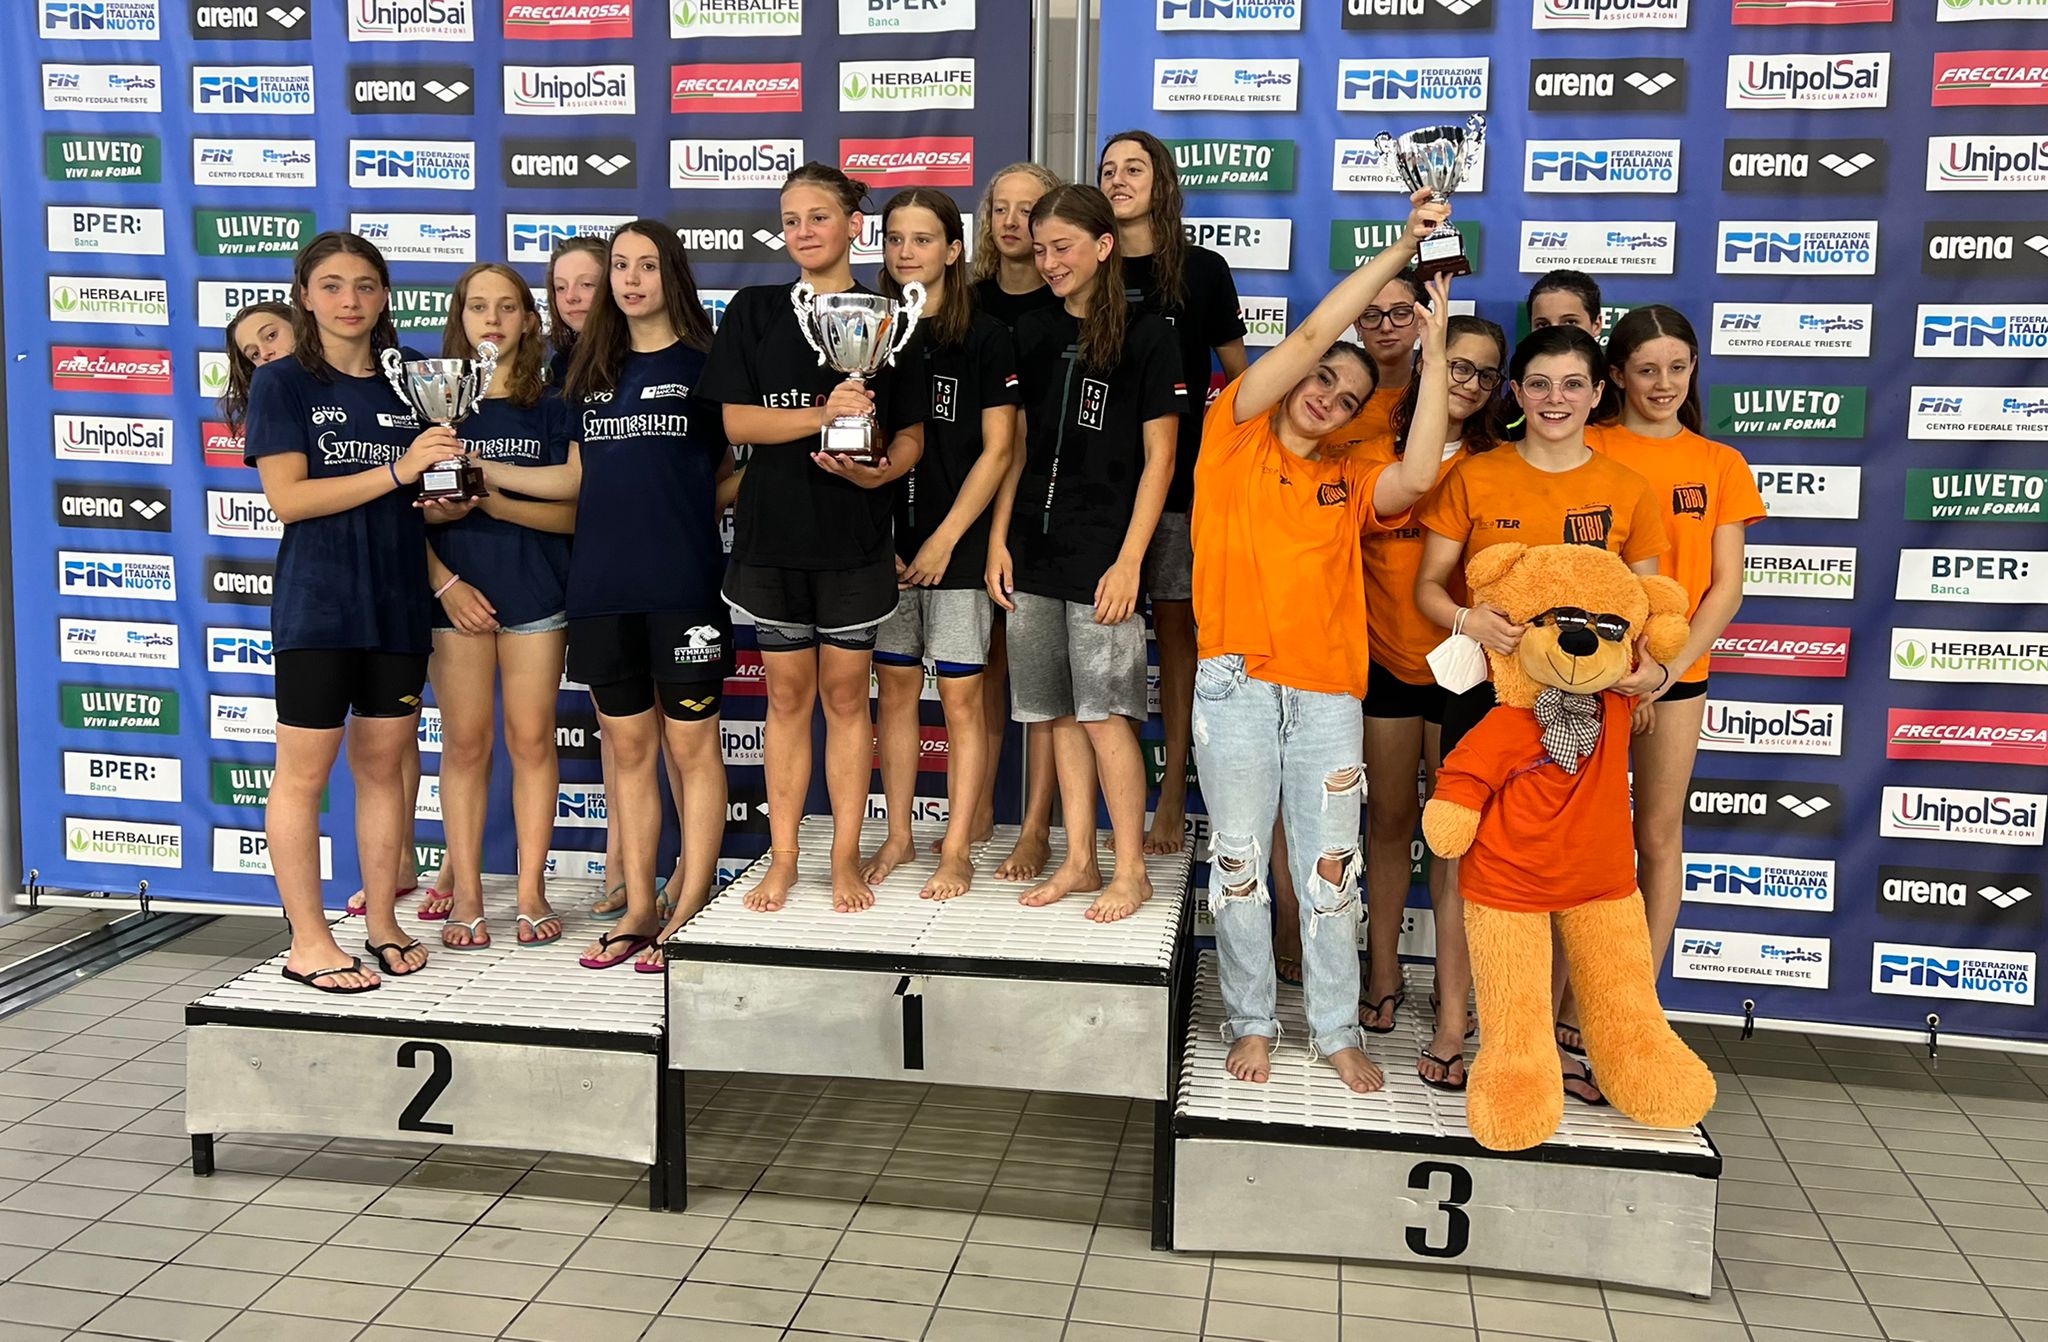 Campionato italiano nuoto a Trieste - terze classificate in categoria ragazzi